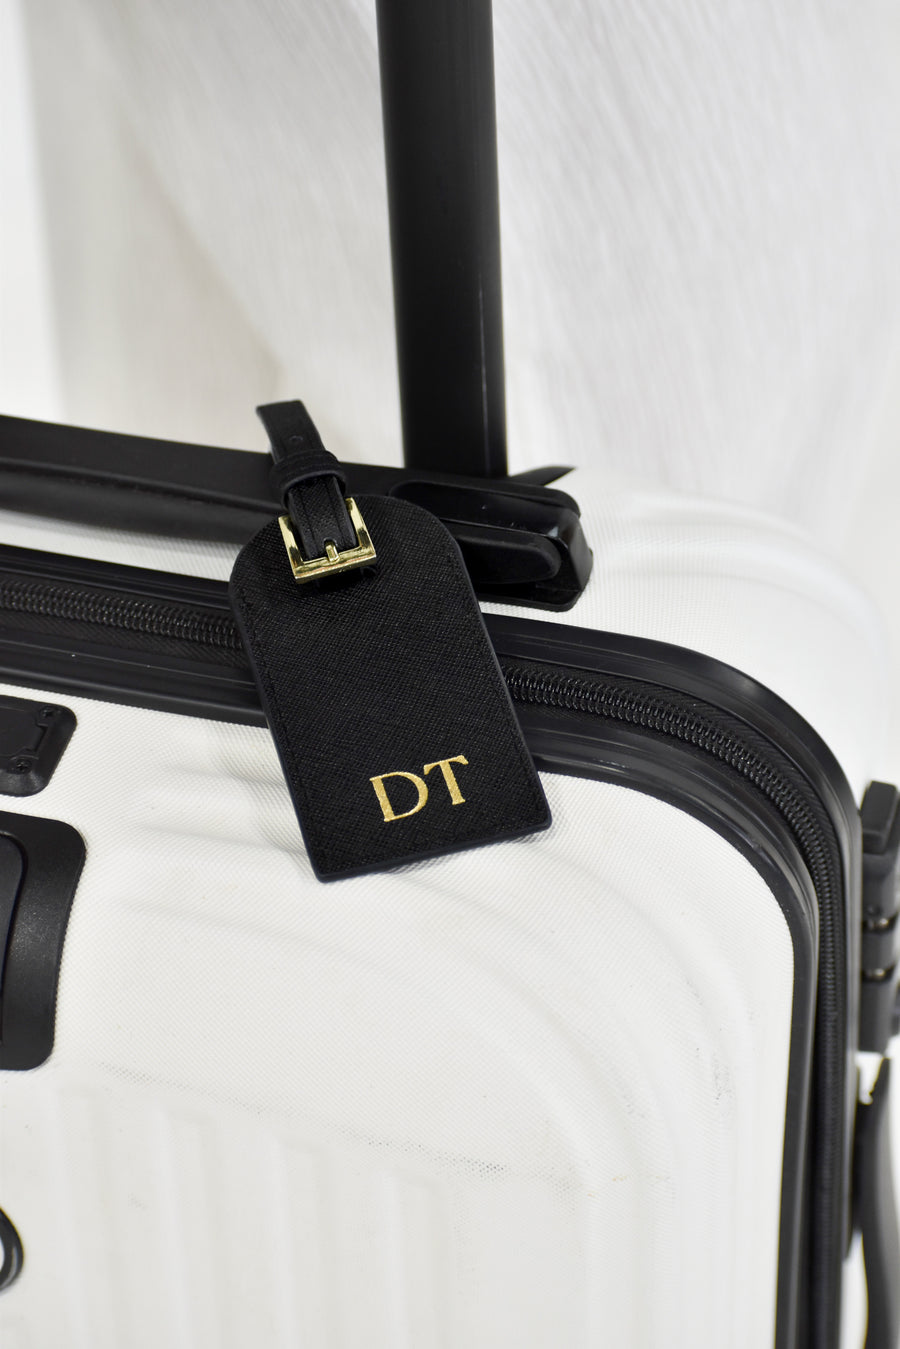 Personalised Luggage Tag Bundle - Buy 2 or more & get 15% off